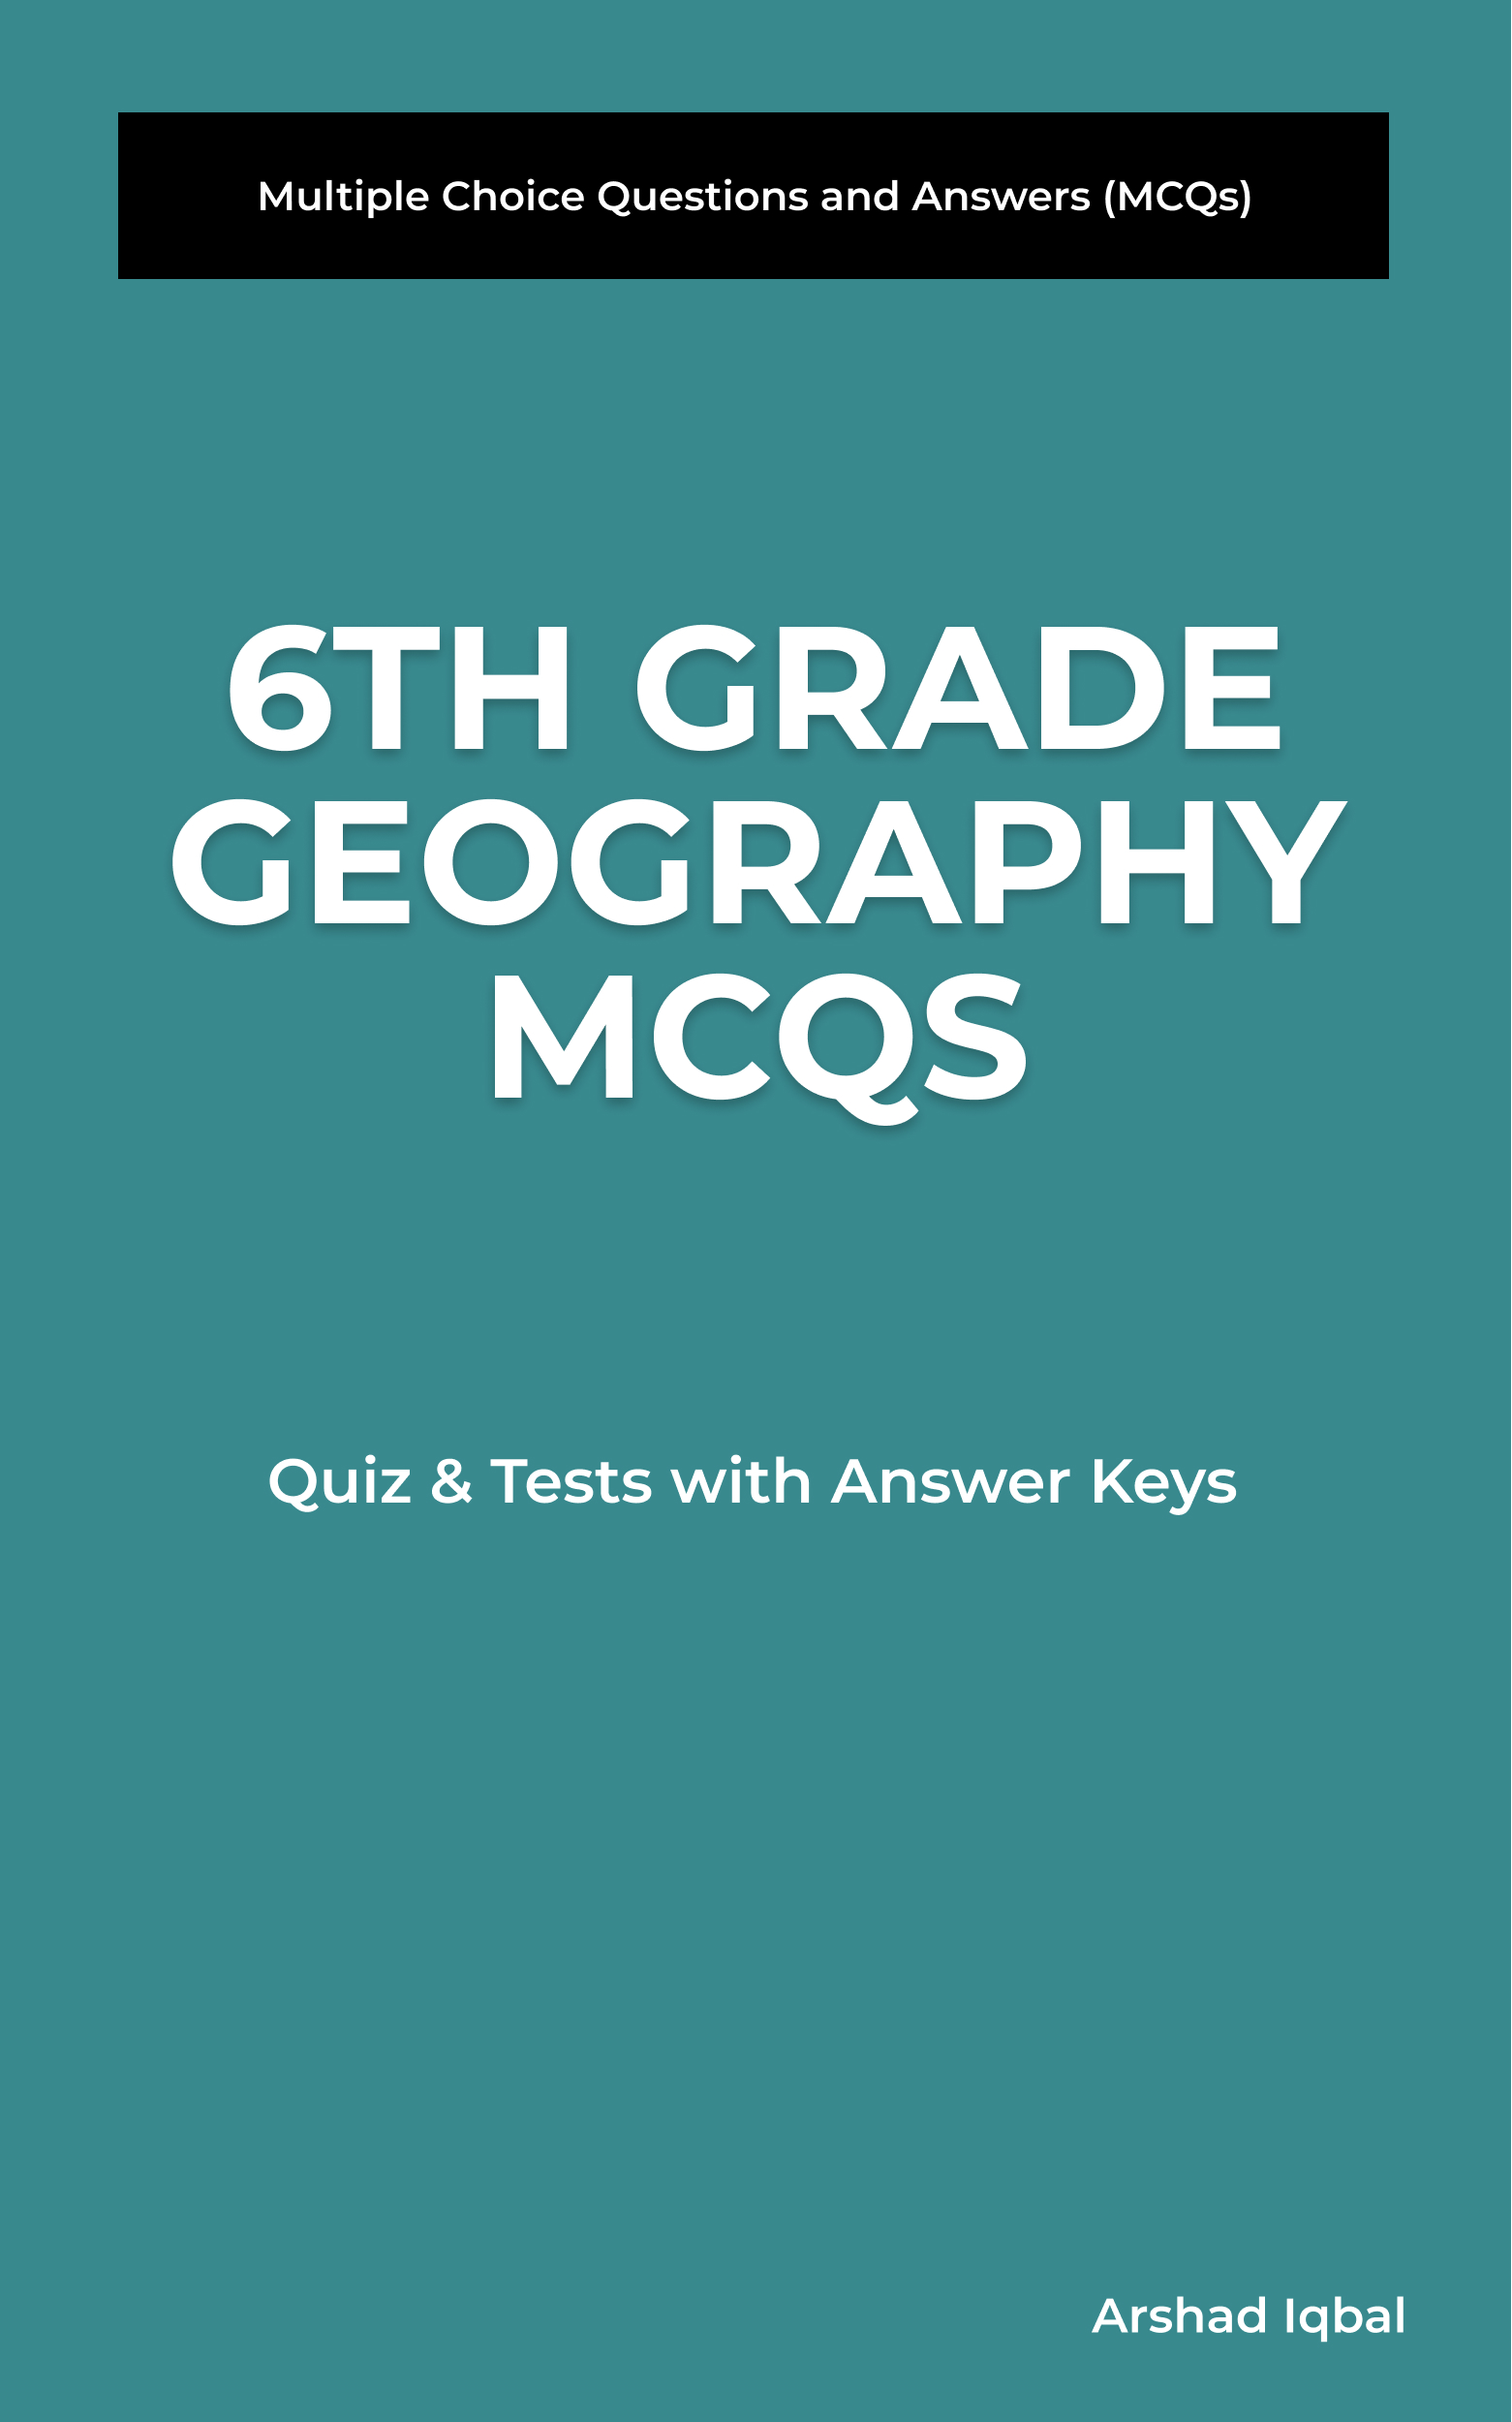 6th Grade Geography MCQ Book PDF